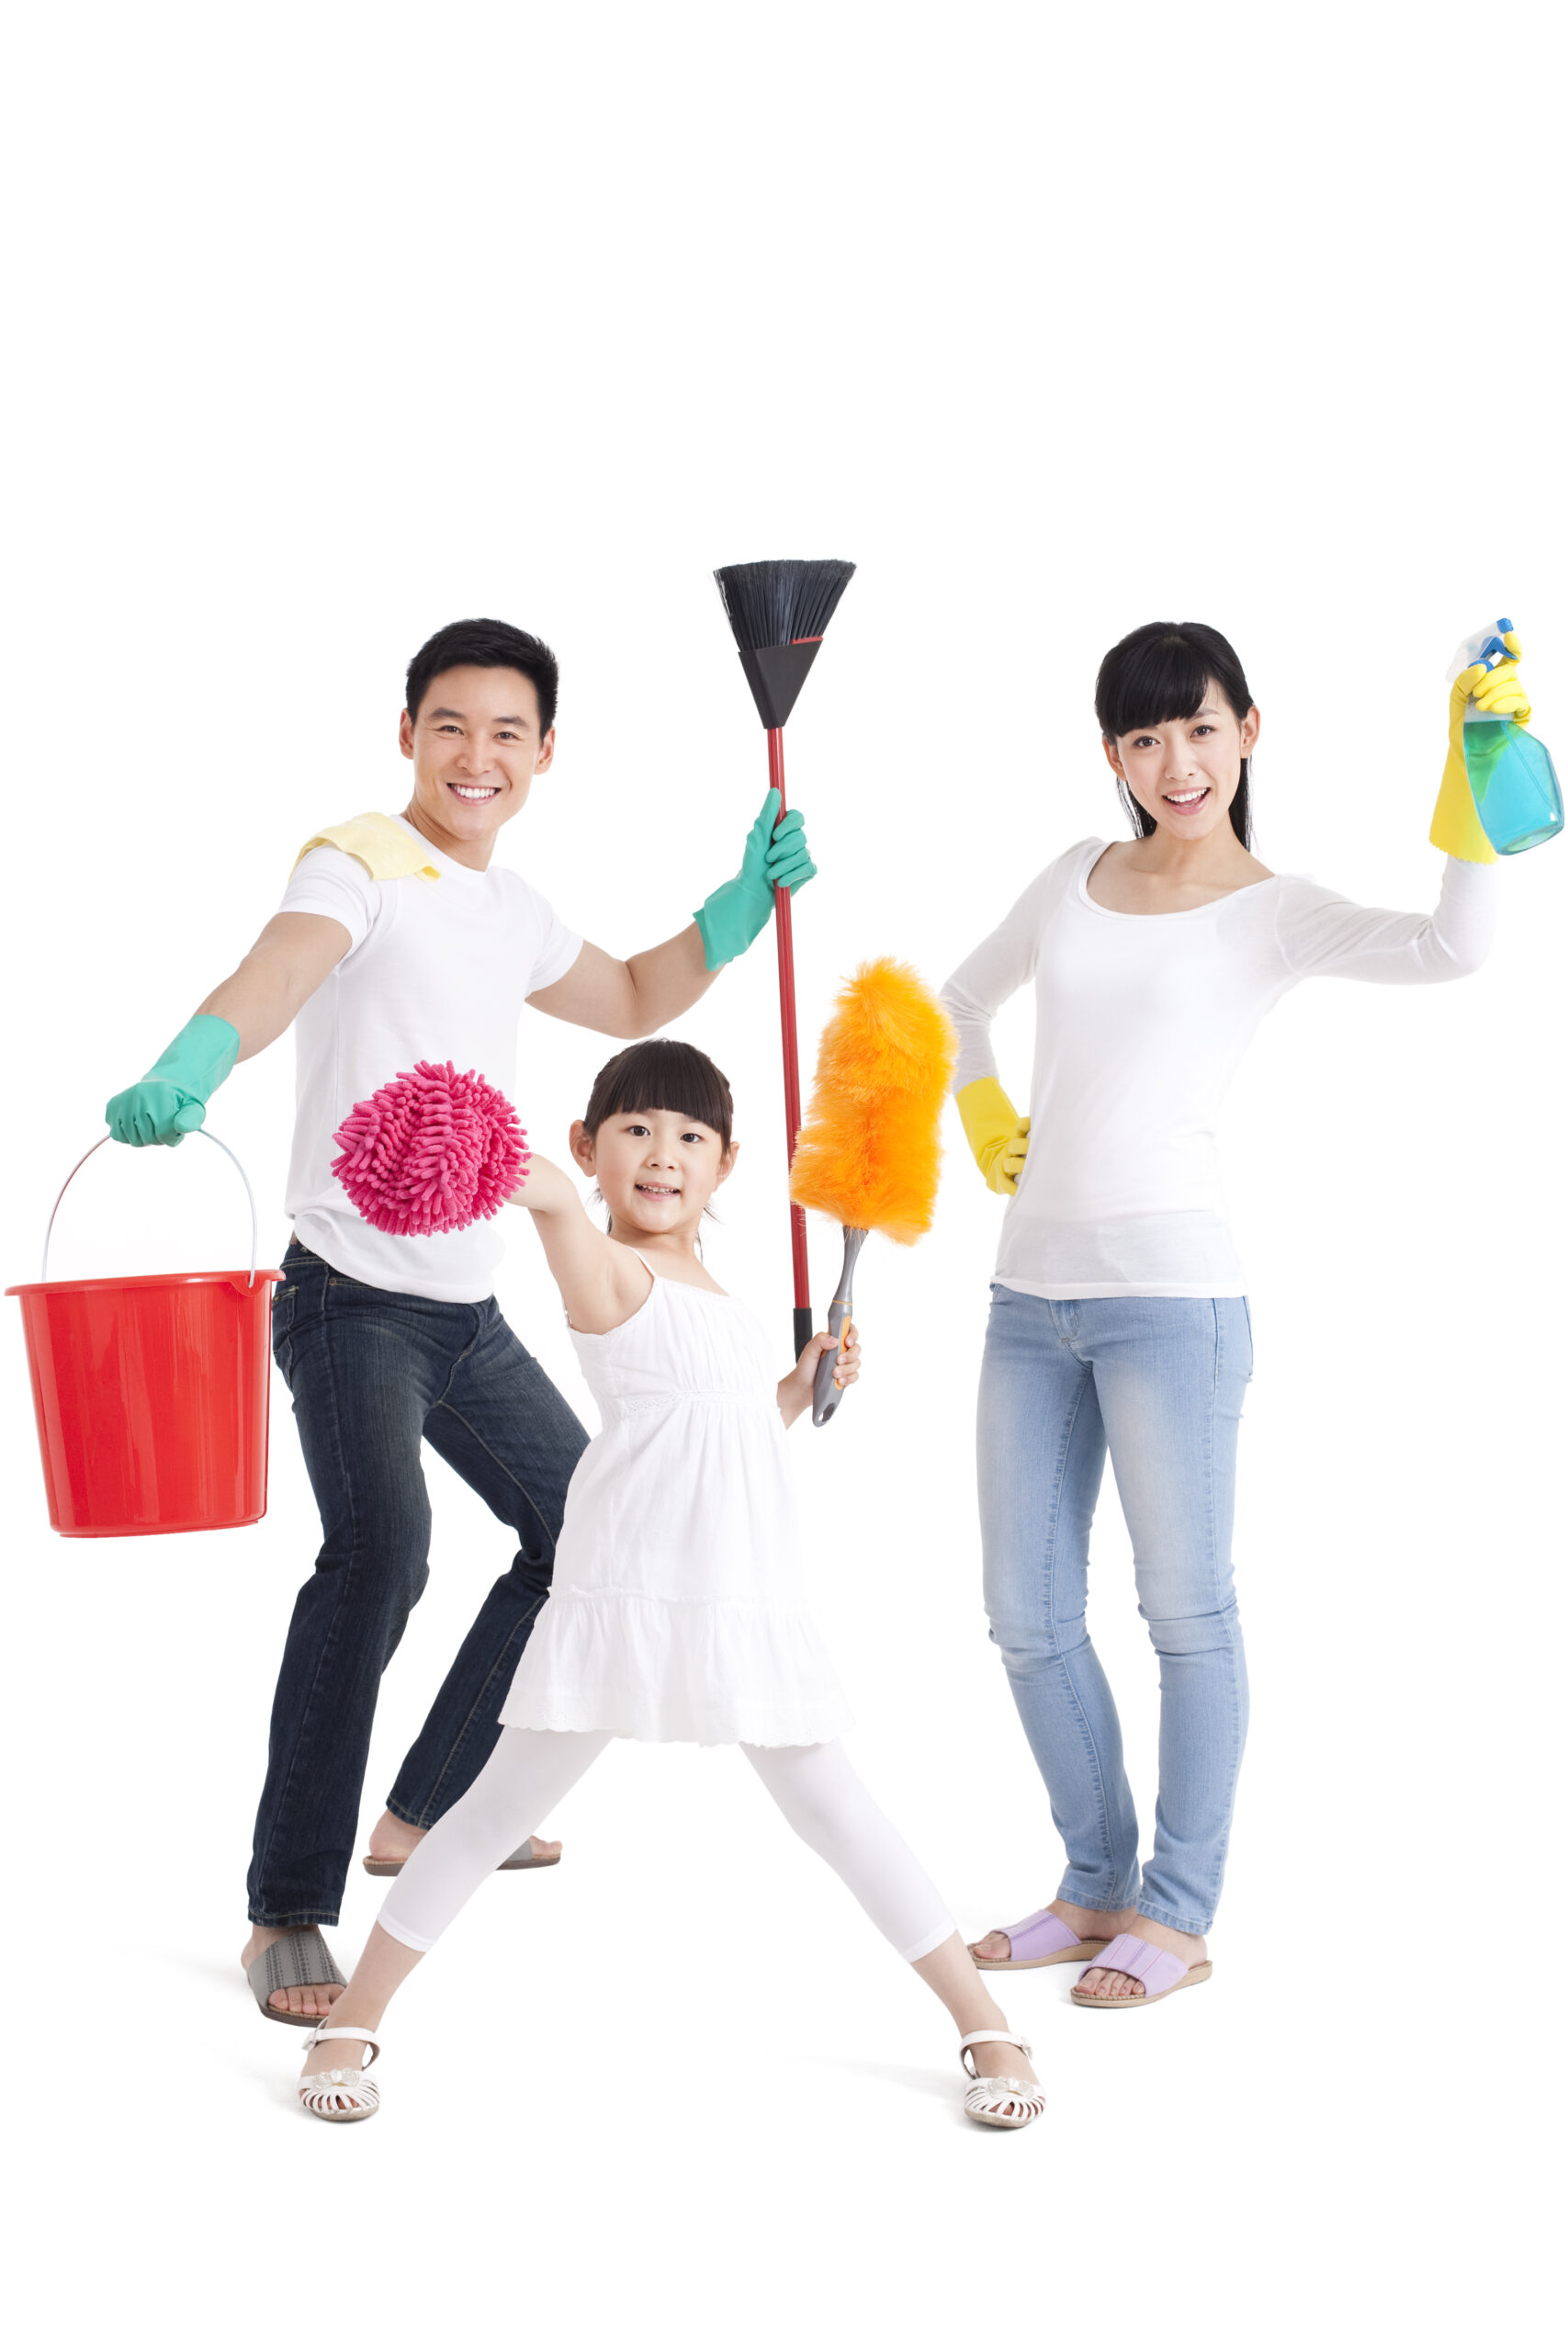 Çocukları Ev İşleri Yapmaya Alıştırmak İçin 6 İpucu